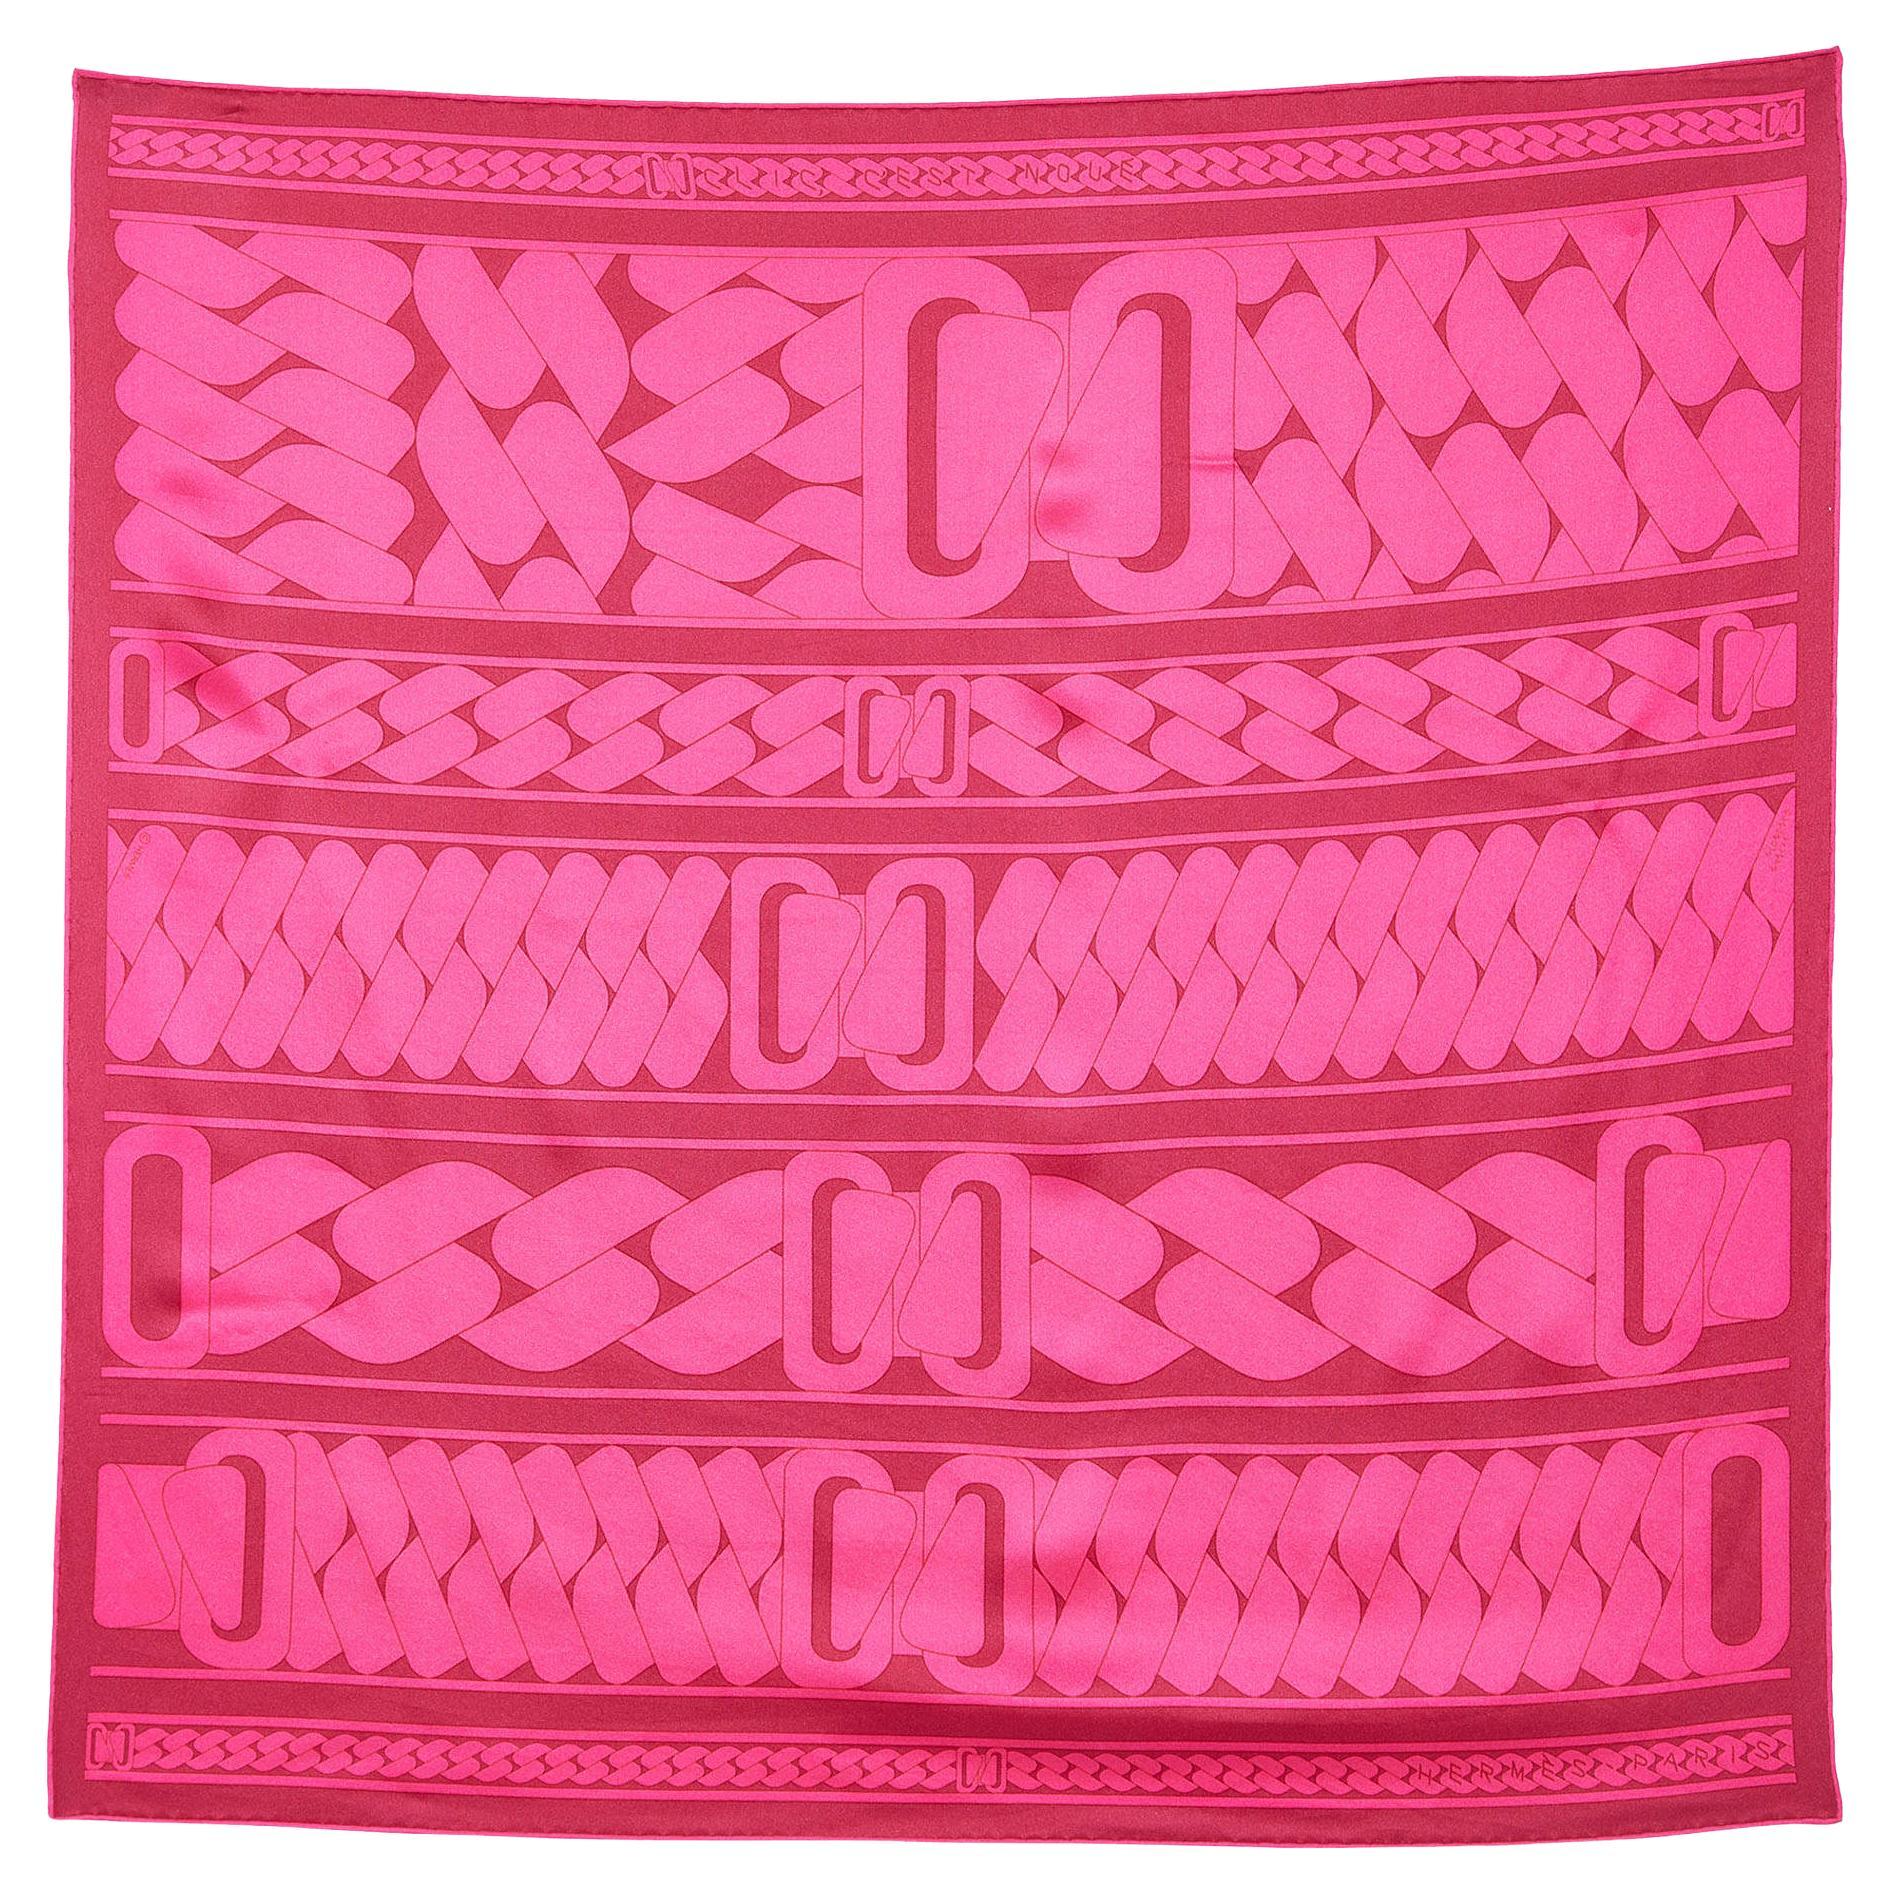 Hermes Pink Printed Silk Square Scarf